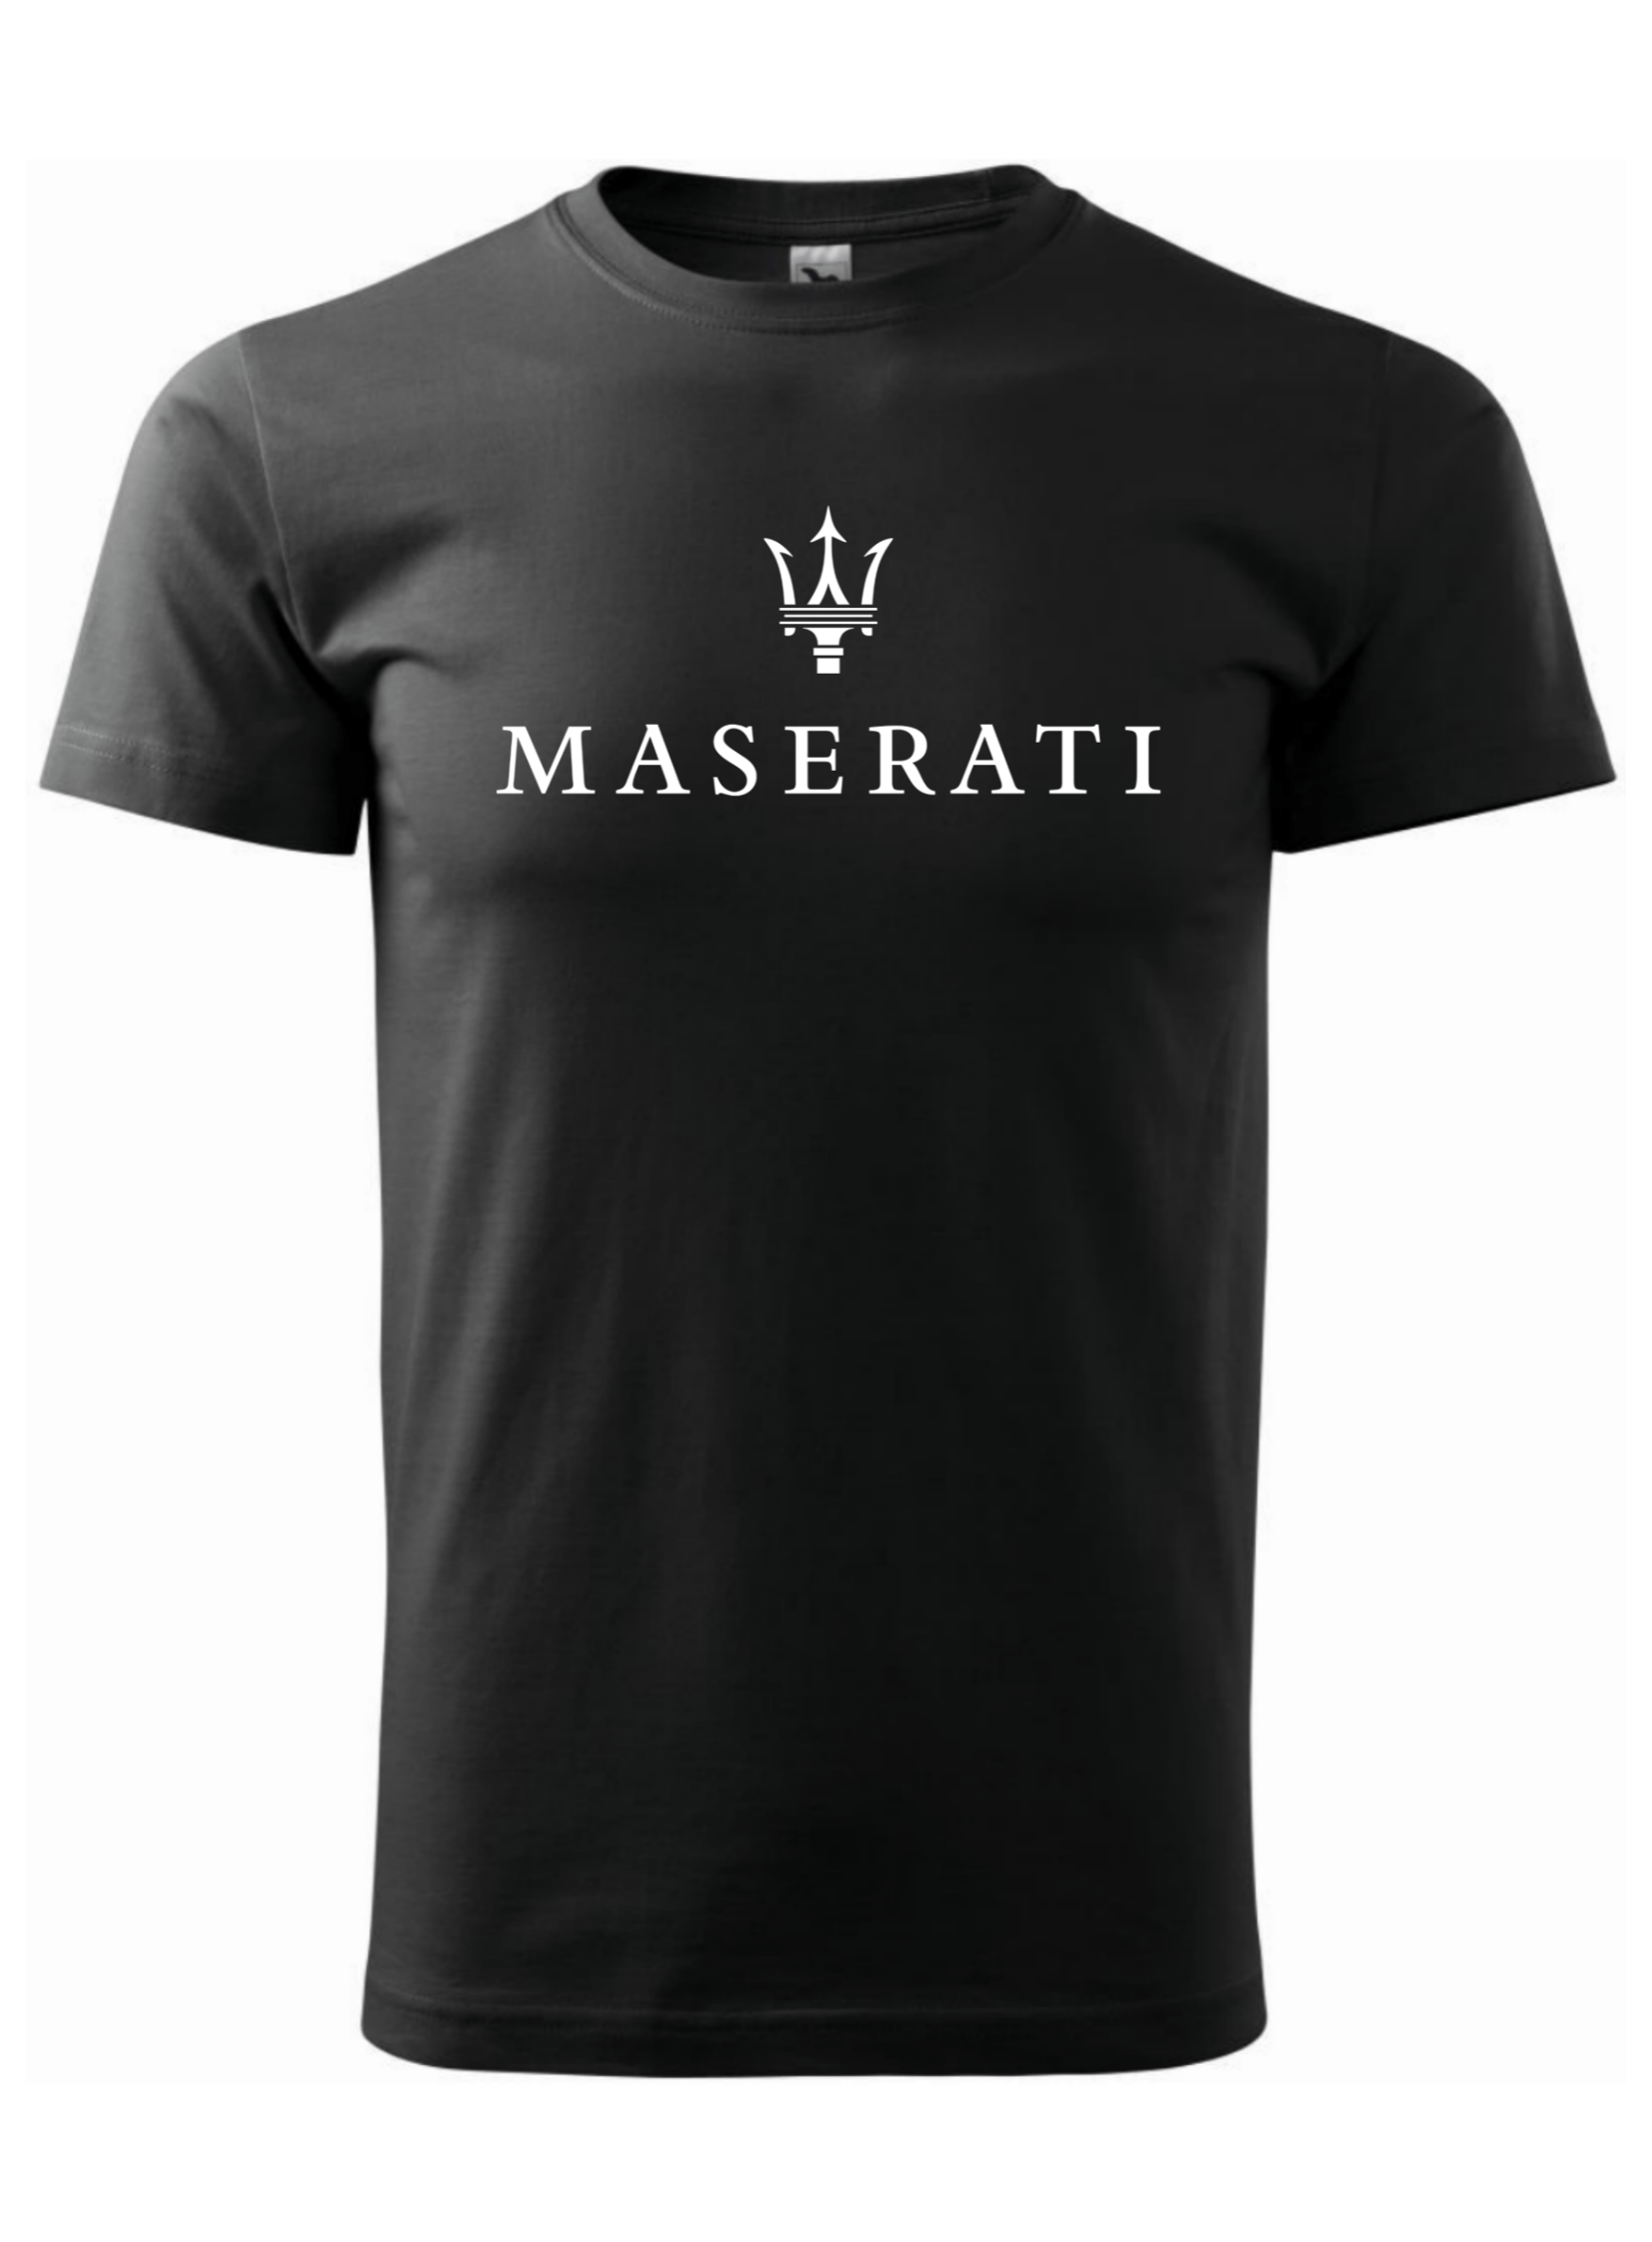 Pánské tričko s potiskem značky Maserati